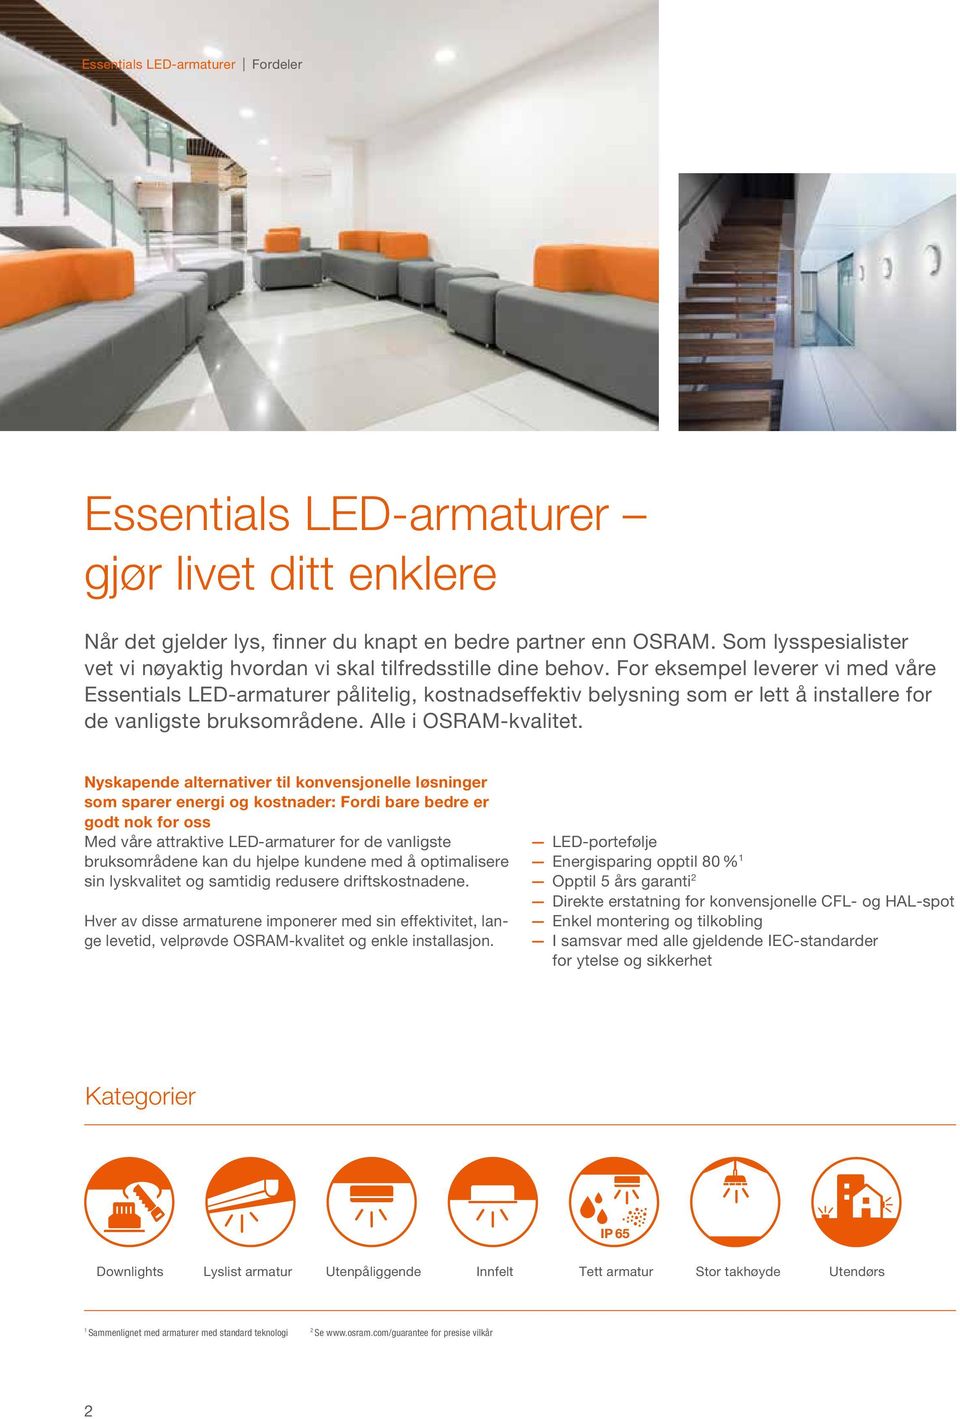 For eksempel leverer vi med våre Essentials LED-armaturer pålitelig, kostnadseffektiv belysning som er lett å installere for de vanligste bruksområdene. Alle i OSRAM-kvalitet.